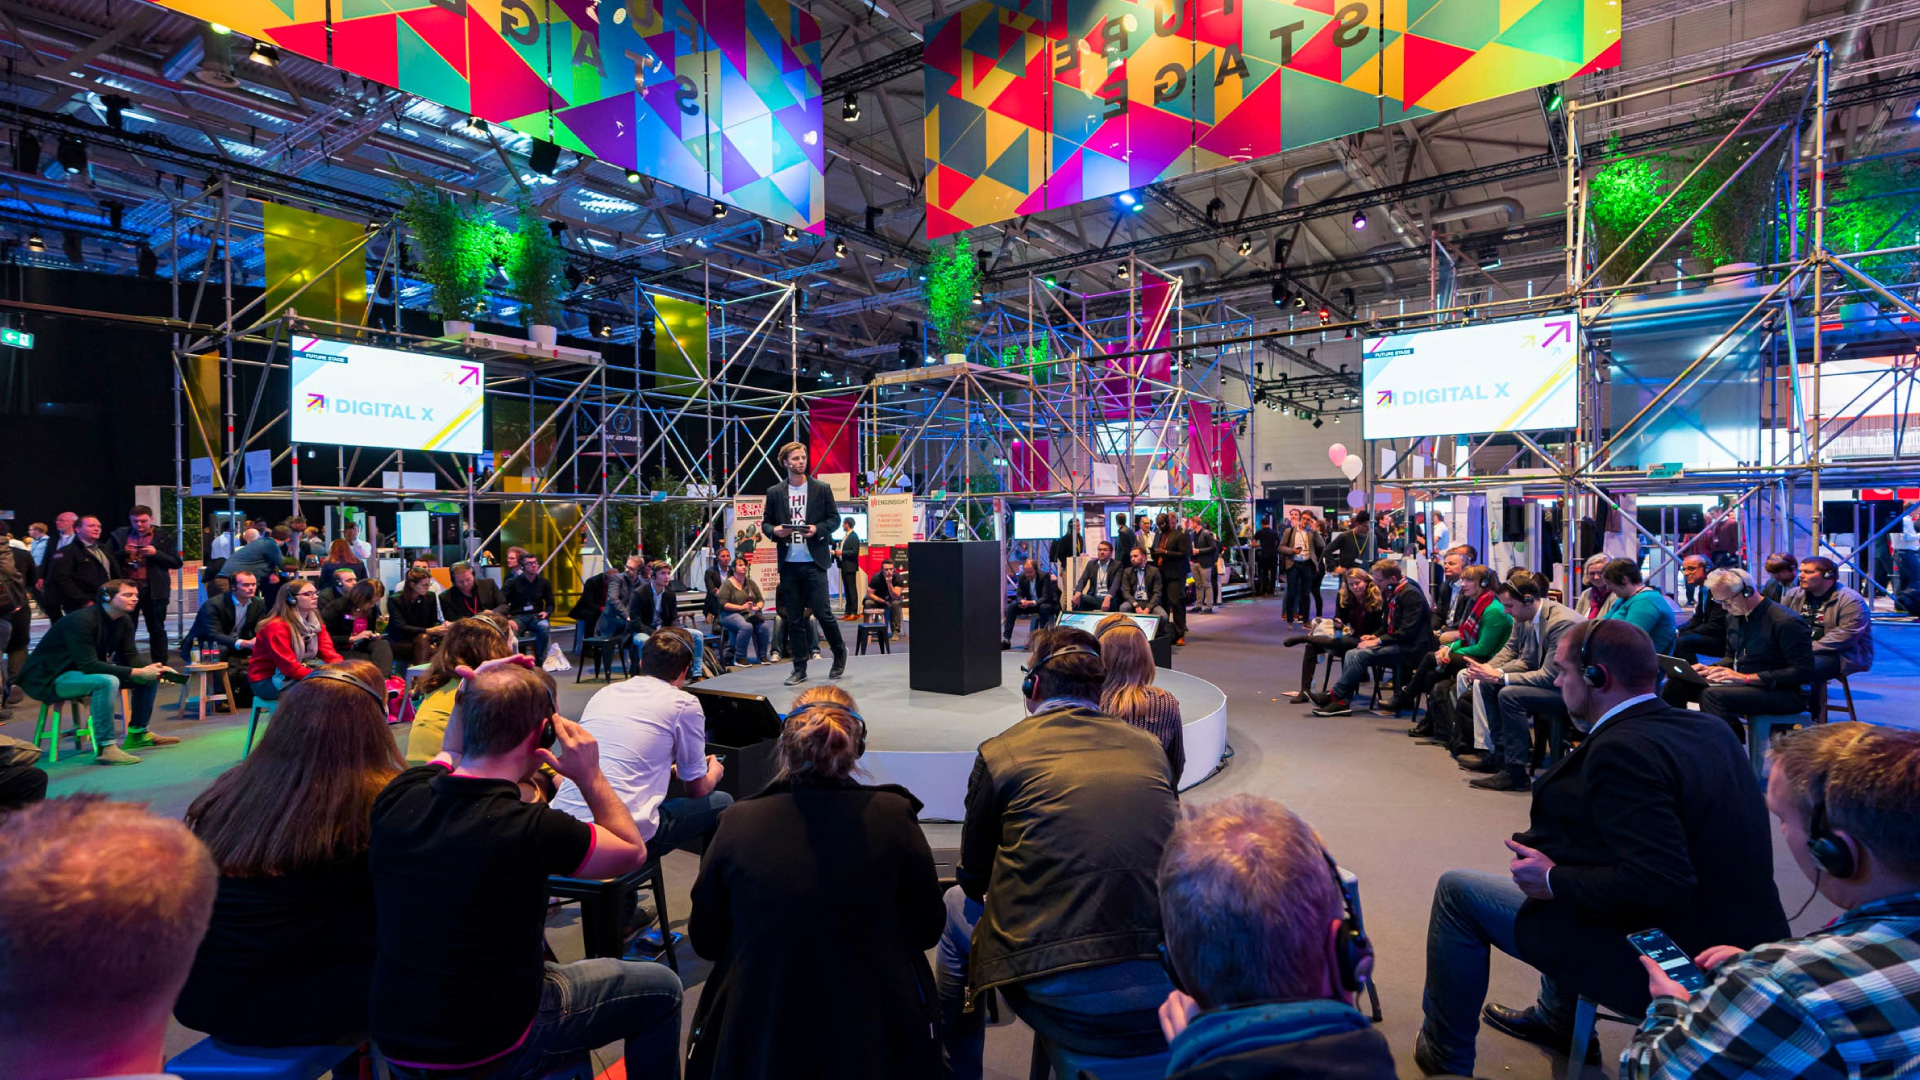 PRG als technischer Dienstleister auf dem Digital X Event in Köln 2019.